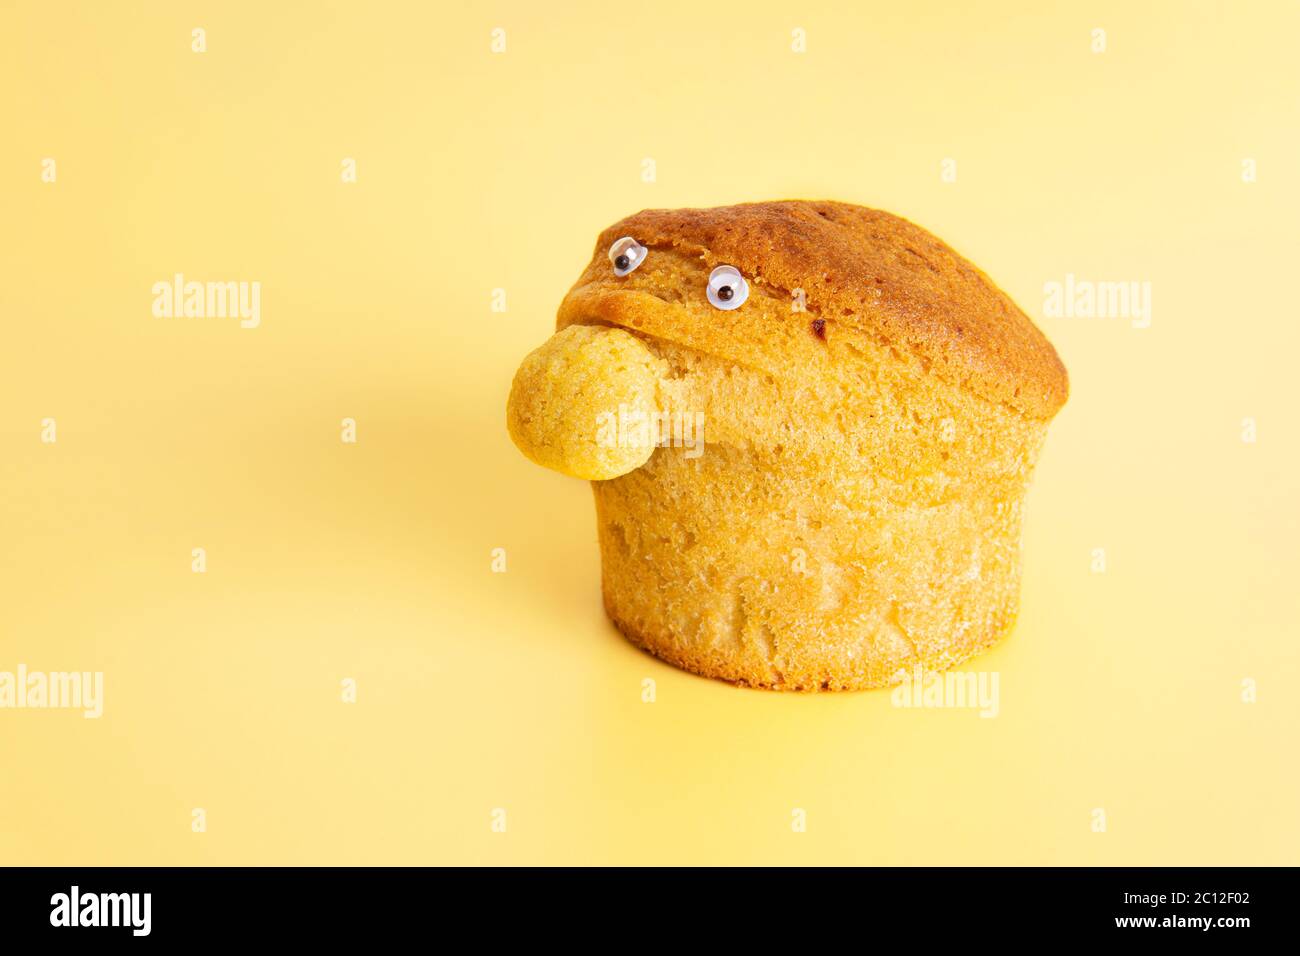 Muffin casera con una nariz grande y ojos pequeños sobre un fondo amarillo. Carácter divertido de la comida. Foto de stock